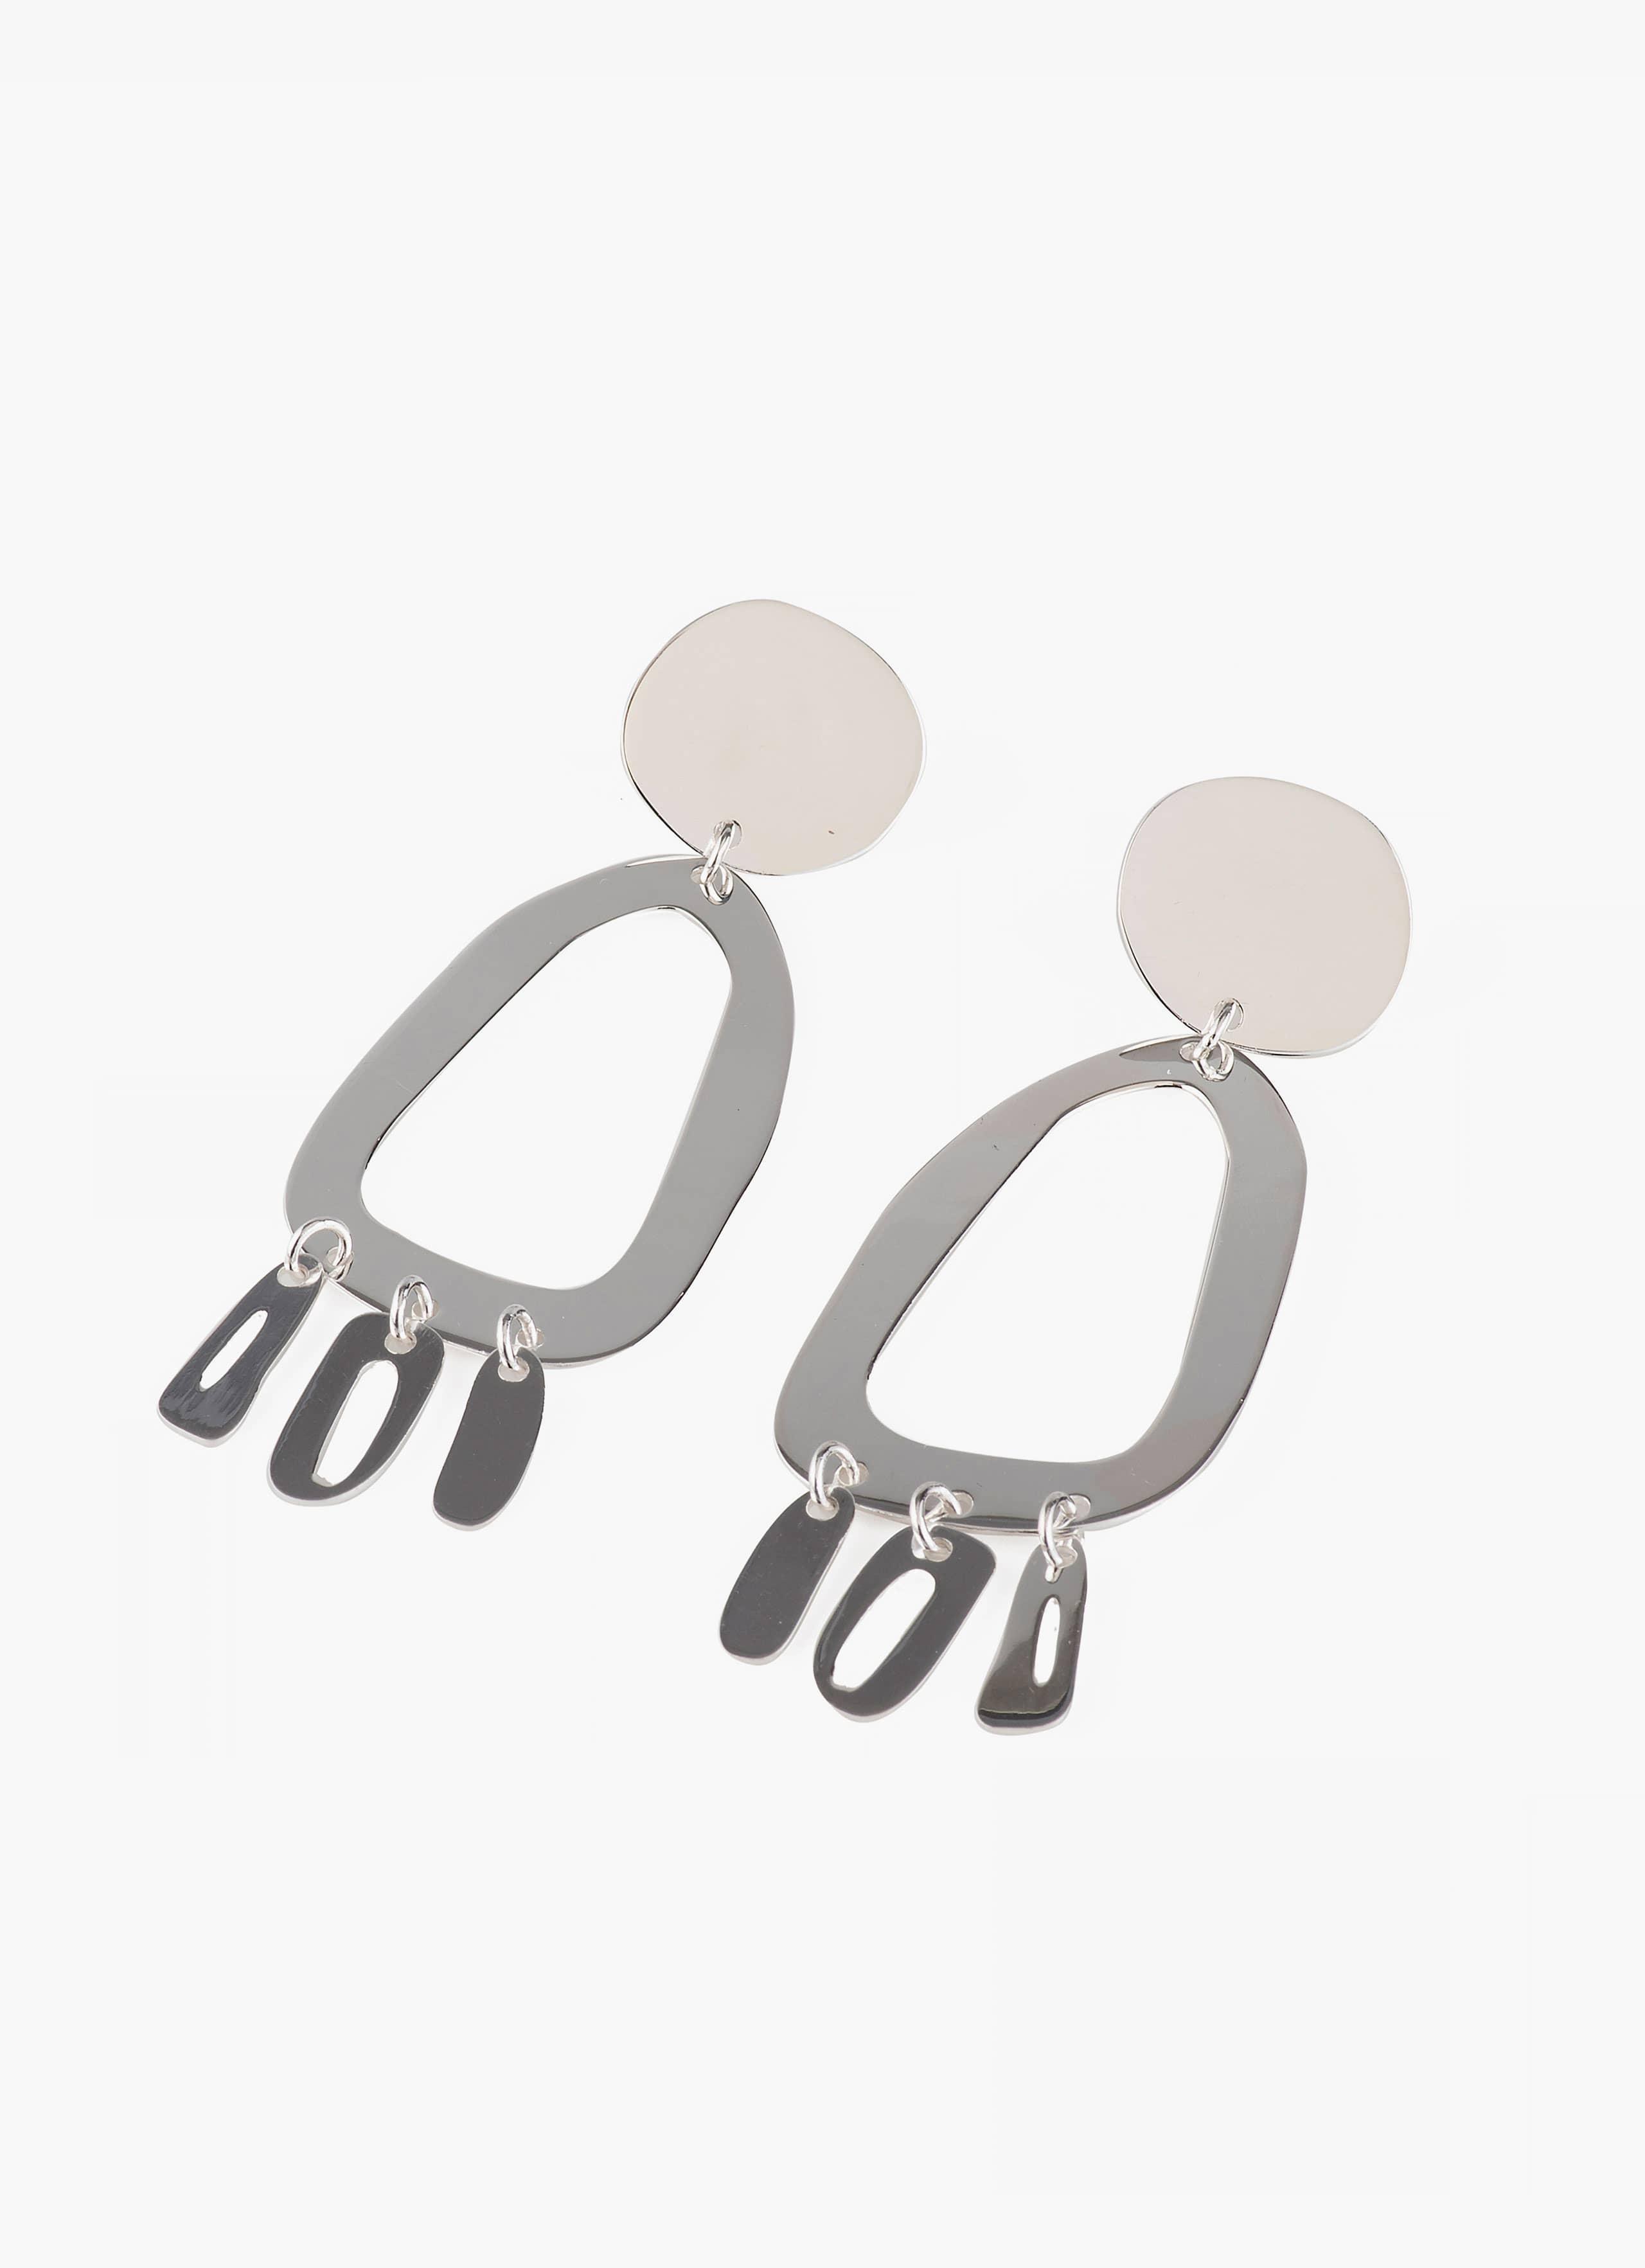 Modern Weaving - Odd Oval Fringe Earrings - Sterling Silver